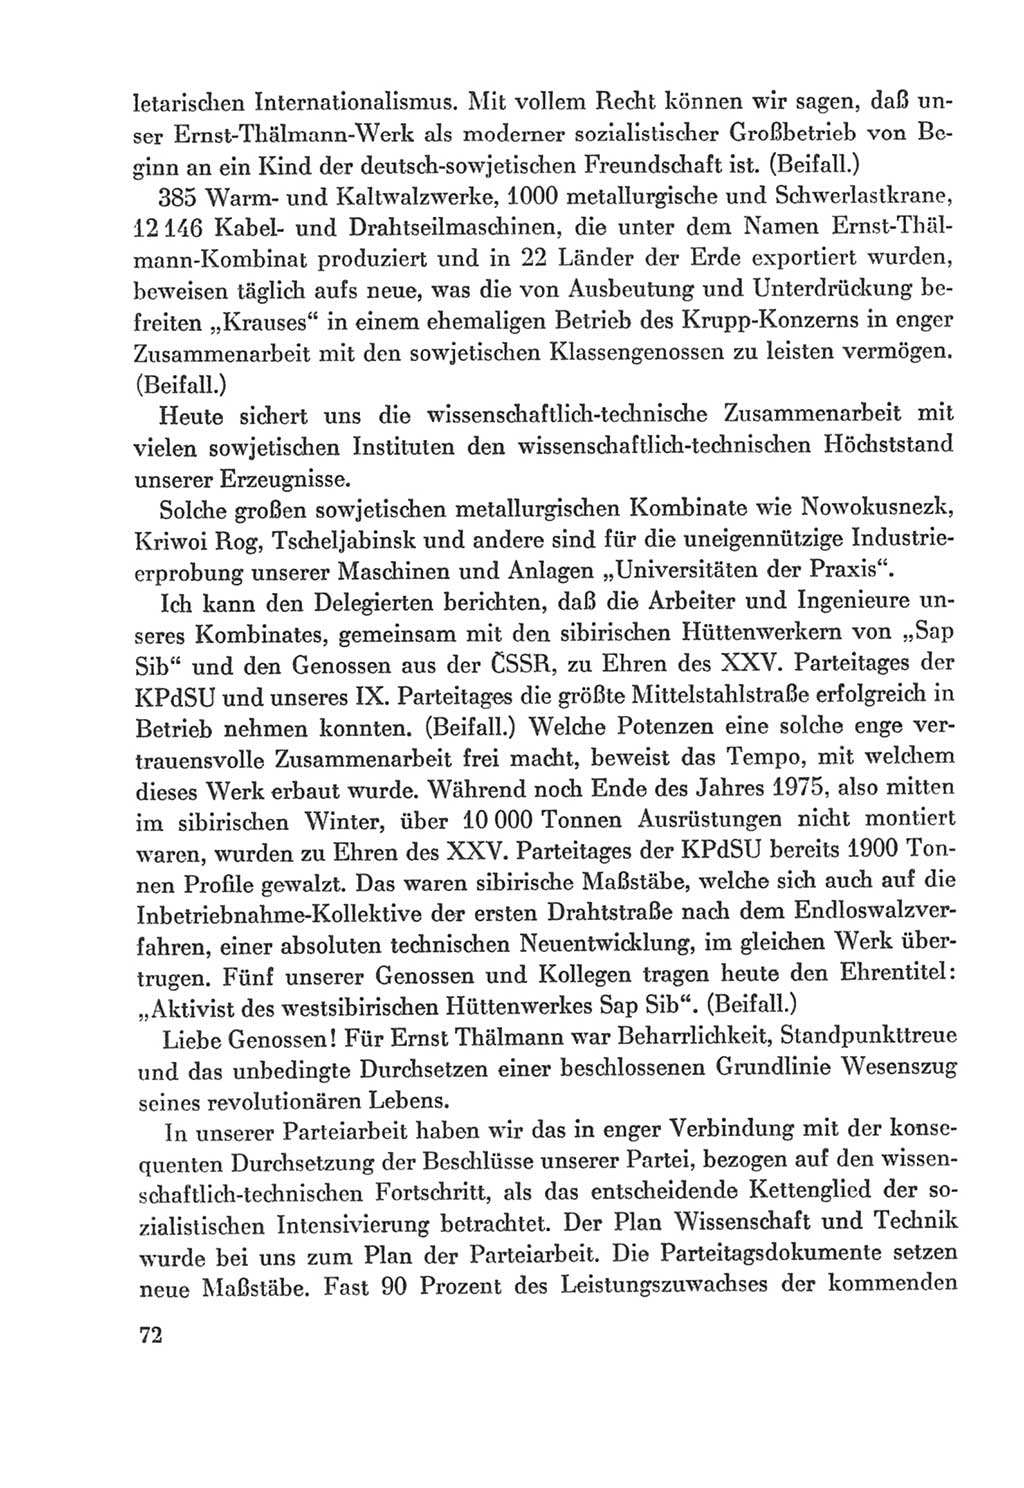 Protokoll der Verhandlungen des Ⅸ. Parteitages der Sozialistischen Einheitspartei Deutschlands (SED) [Deutsche Demokratische Republik (DDR)] 1976, Band 2, Seite 72 (Prot. Verh. Ⅸ. PT SED DDR 1976, Bd. 2, S. 72)